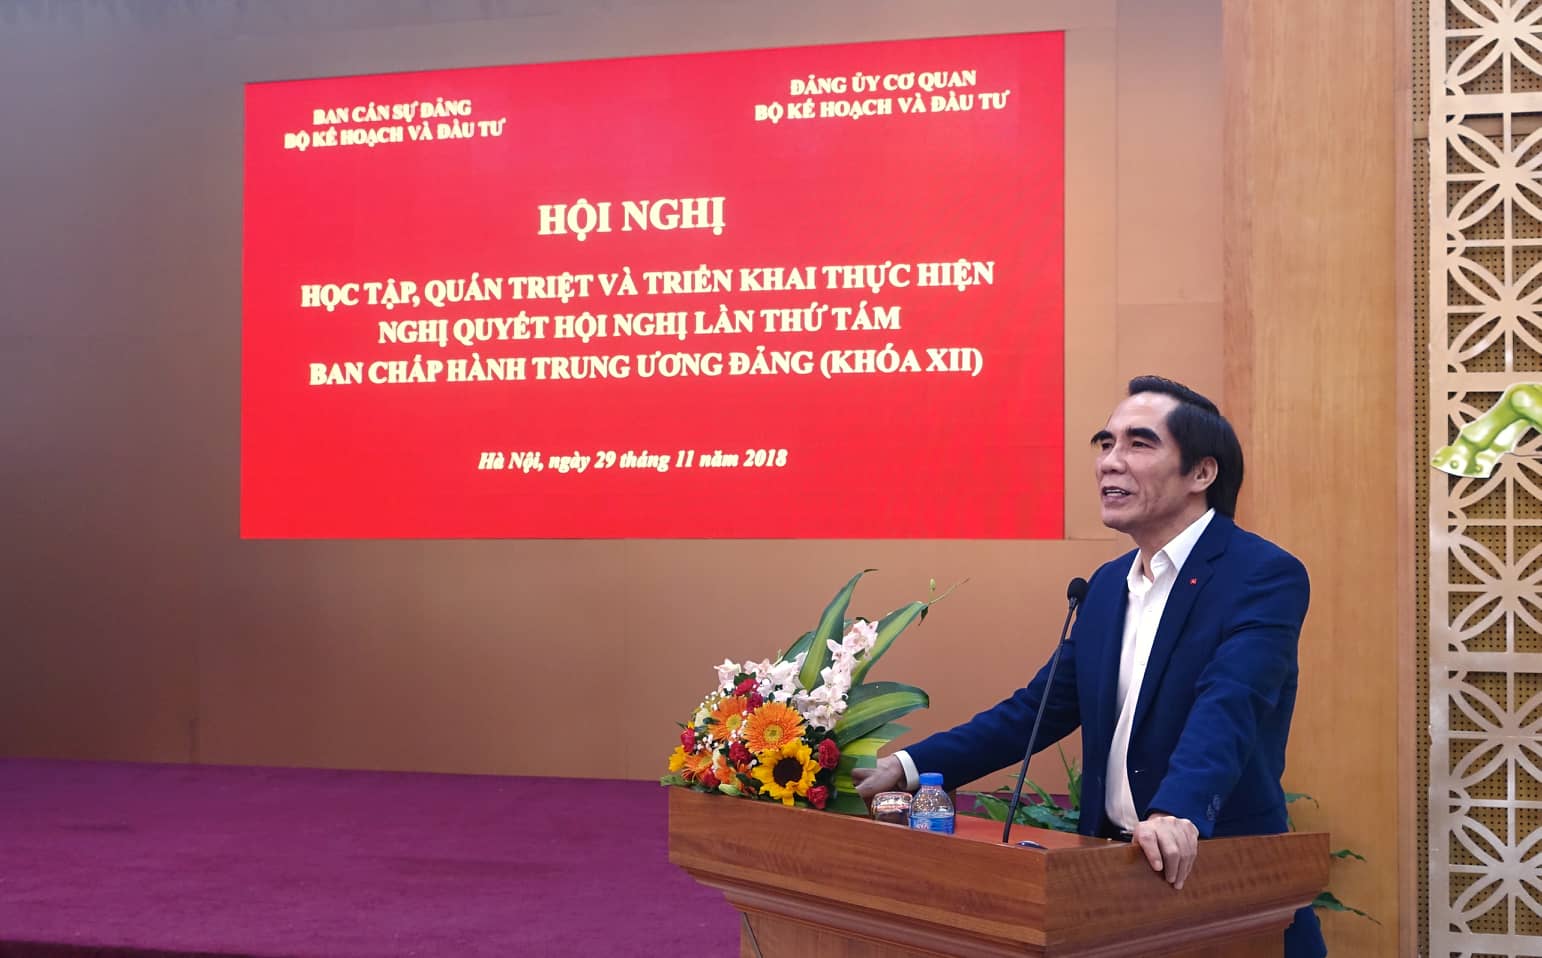 Ông Nguyễn Văn Trung - Bí thư Đảng ủy, Thứ trưởng Bộ Kế hoạch và Đầu tư phát biểu khai mạc Hội nghị (Ảnh: Chí Cường)